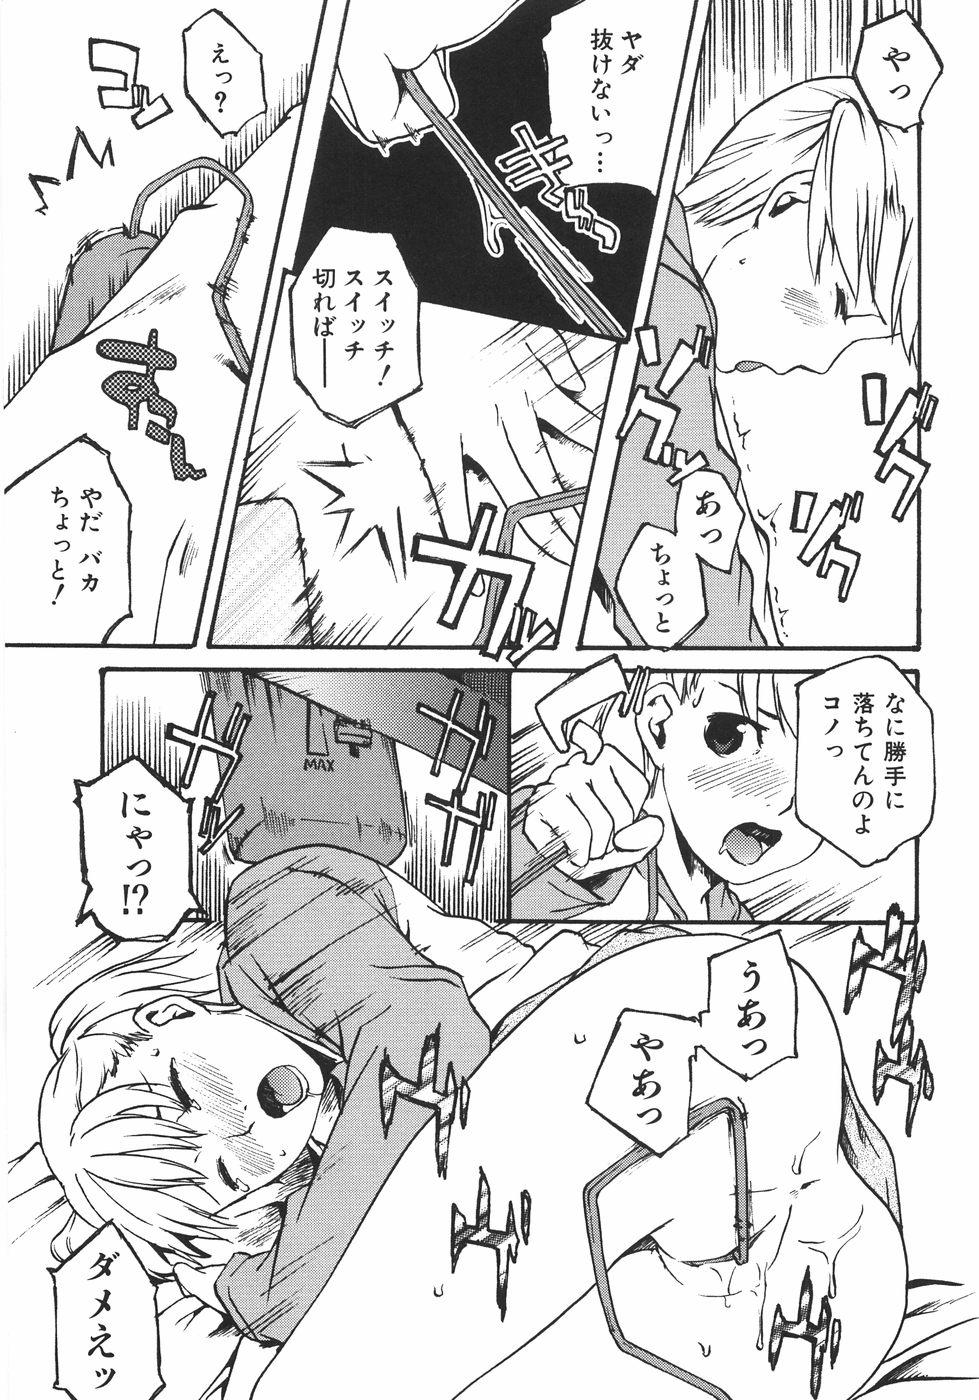 Uncensored Koimitsu Assort Tats - Page 198